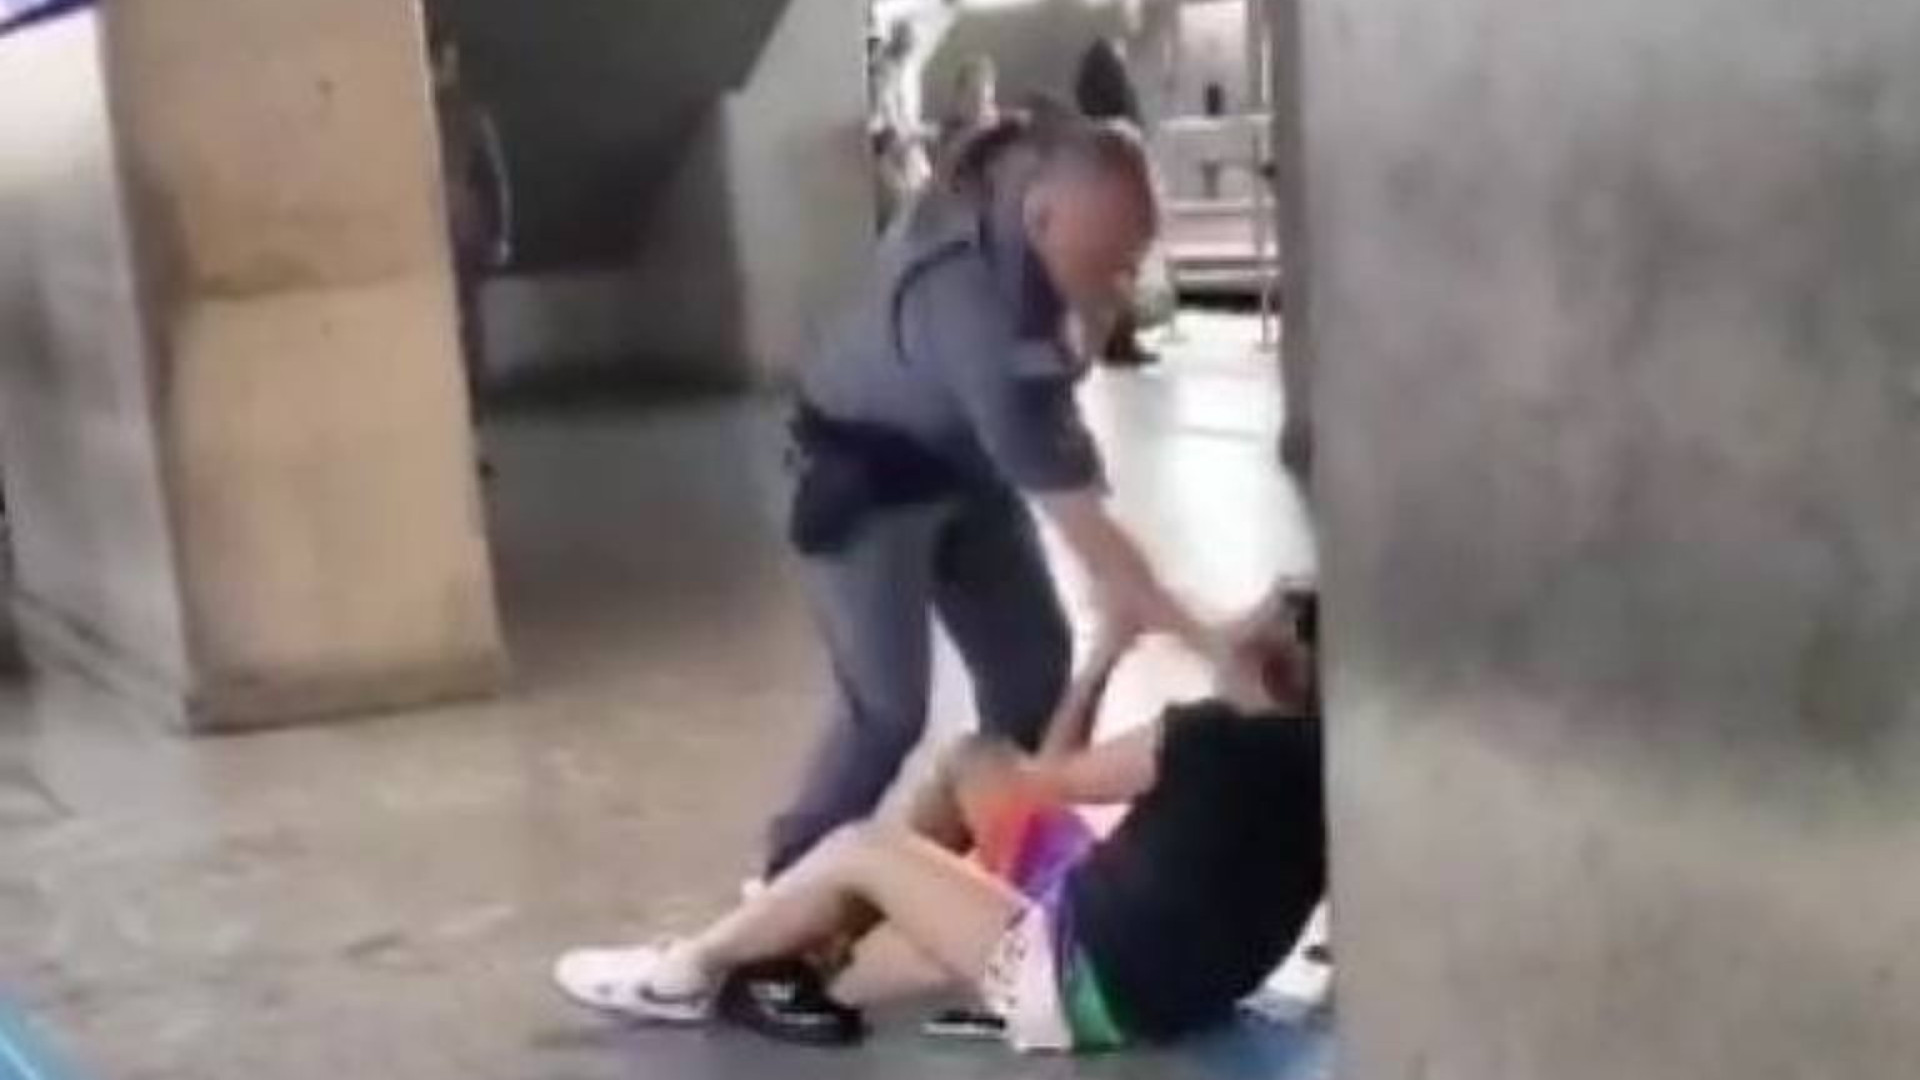 Advogada diz que mulher agredida por policial no Metrô de SP está abalada e 'em pânico'